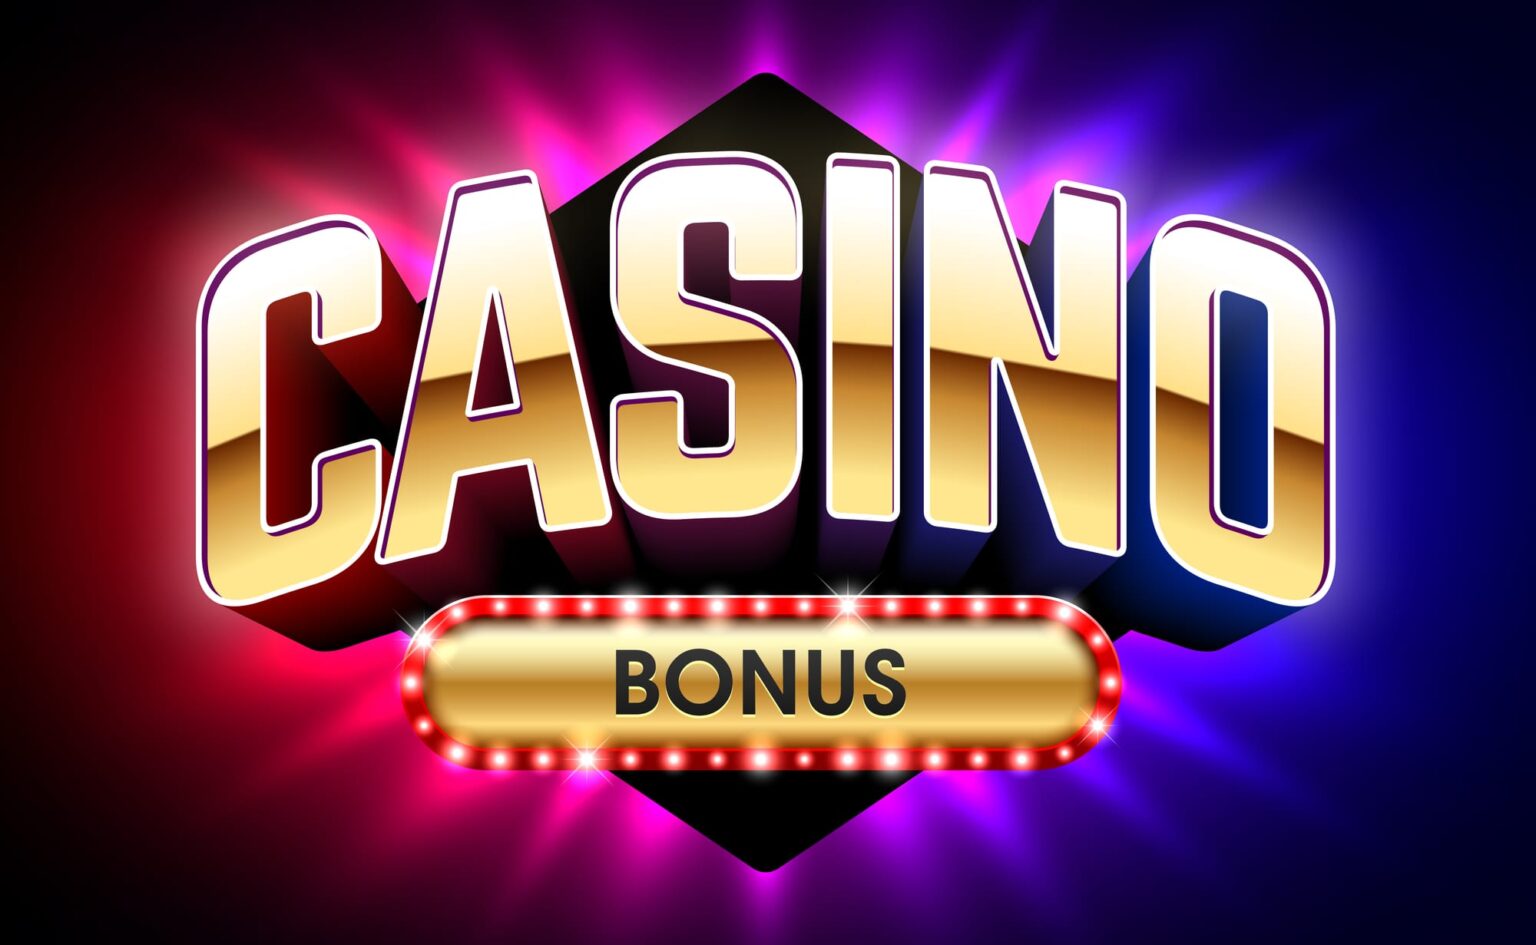 Casino British No Deposit Bonus